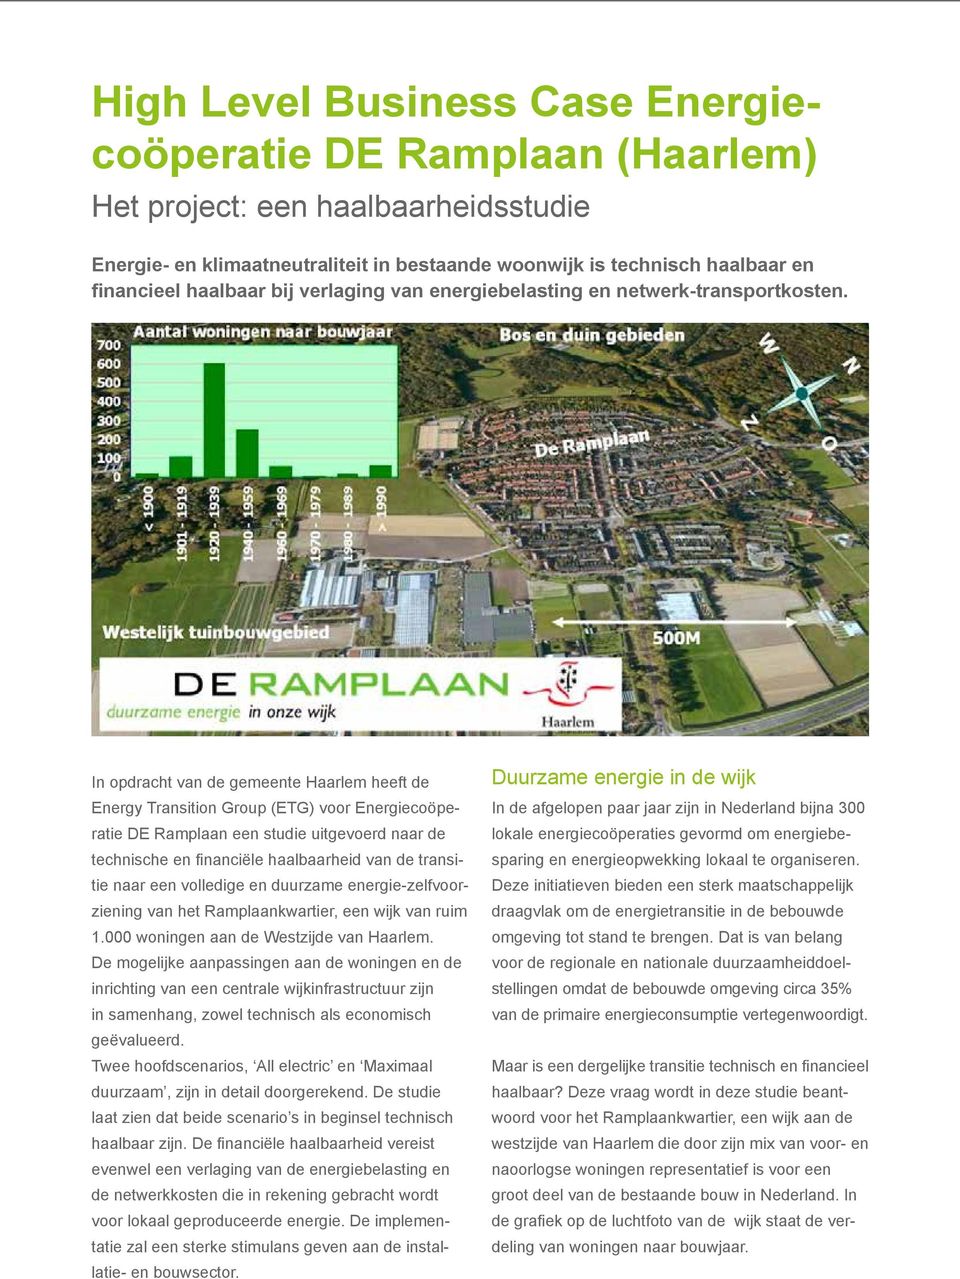 In opdracht van de gemeente Haarlem heeft de Energy Transition Group (ETG) voor Energiecoöperatie DE Ramplaan een studie uitgevoerd naar de technische en financiële haalbaarheid van de transitie naar